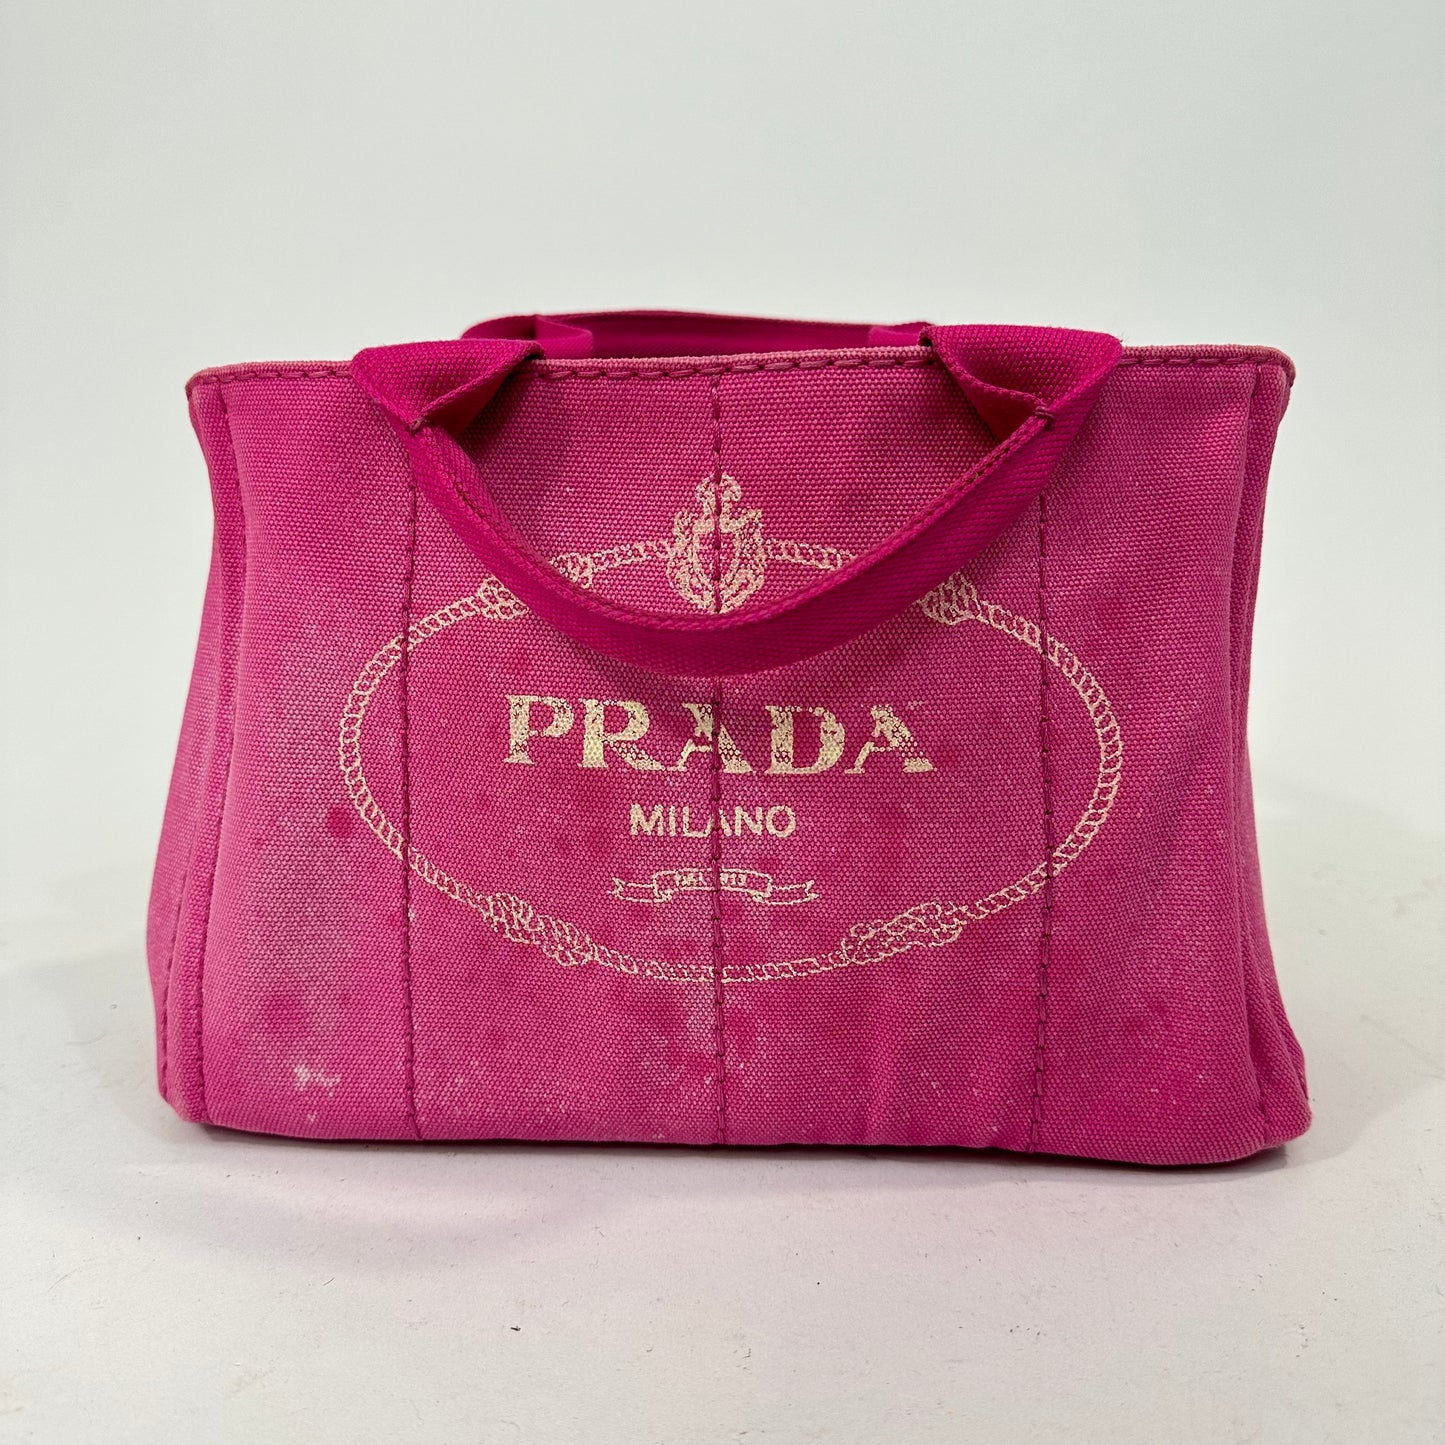 Vintage Prada Pink Canapa Canvas Tote Bag